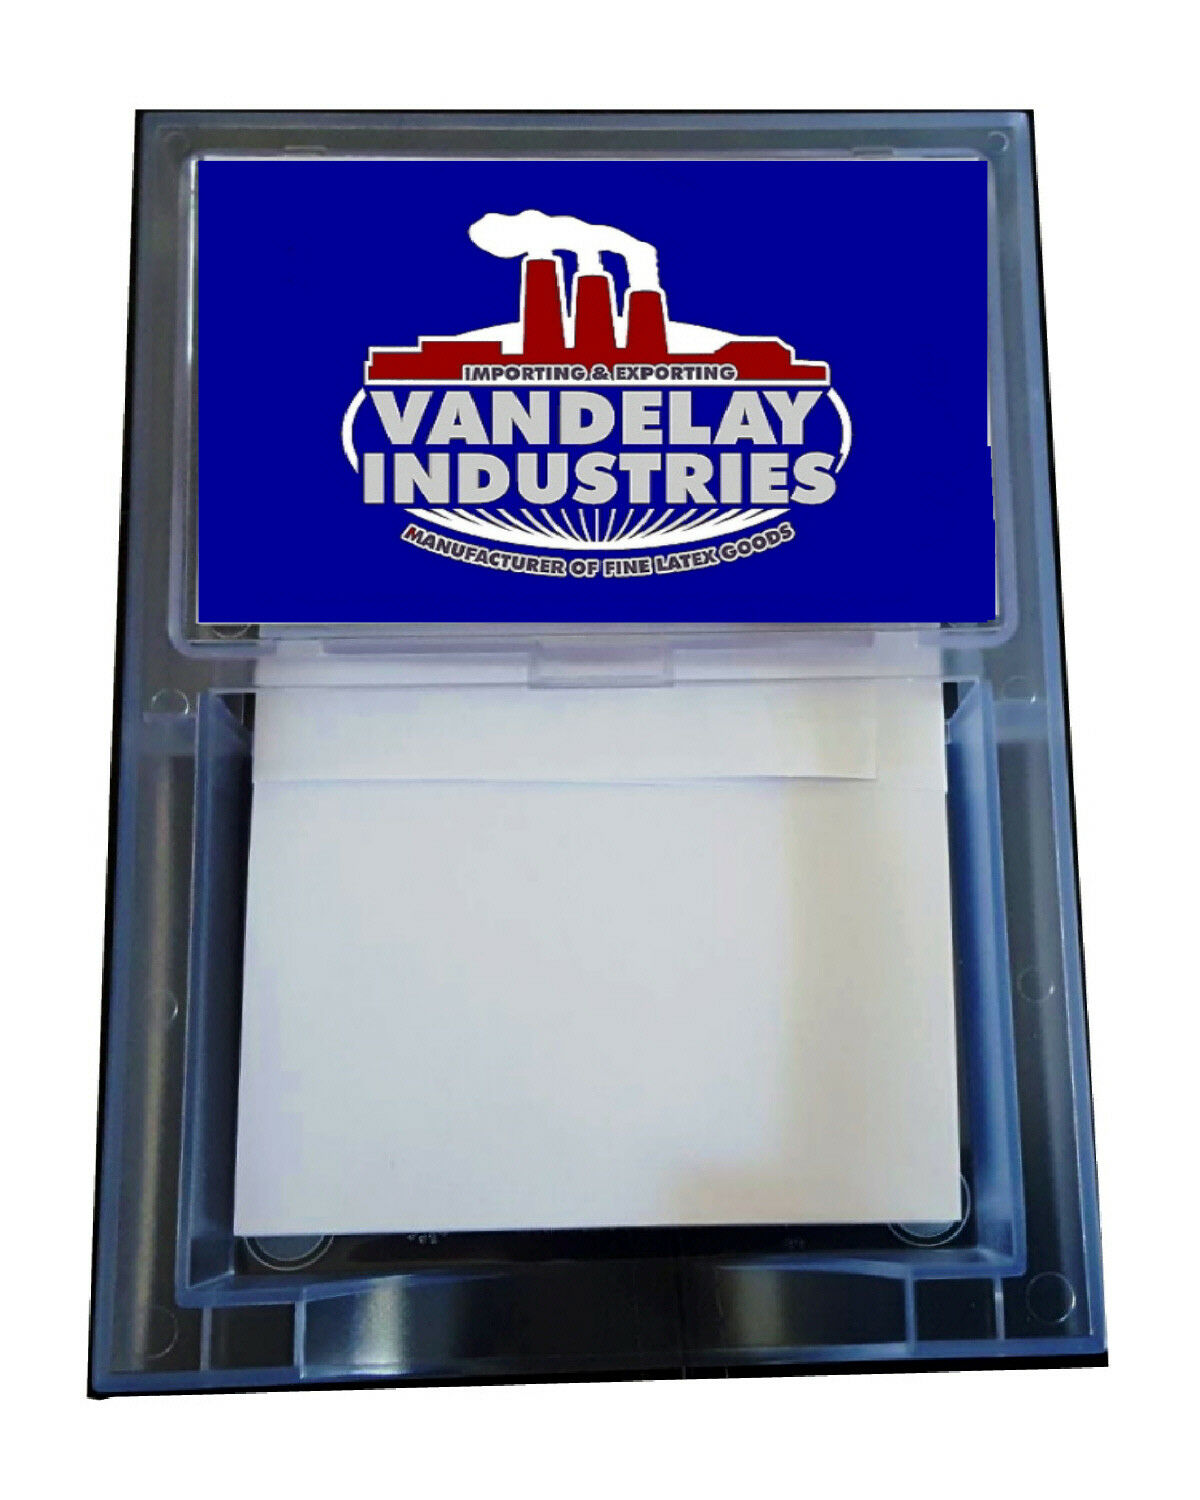 Vandelay Industries Seinfeld George Costanza Note Pad Memo Holder